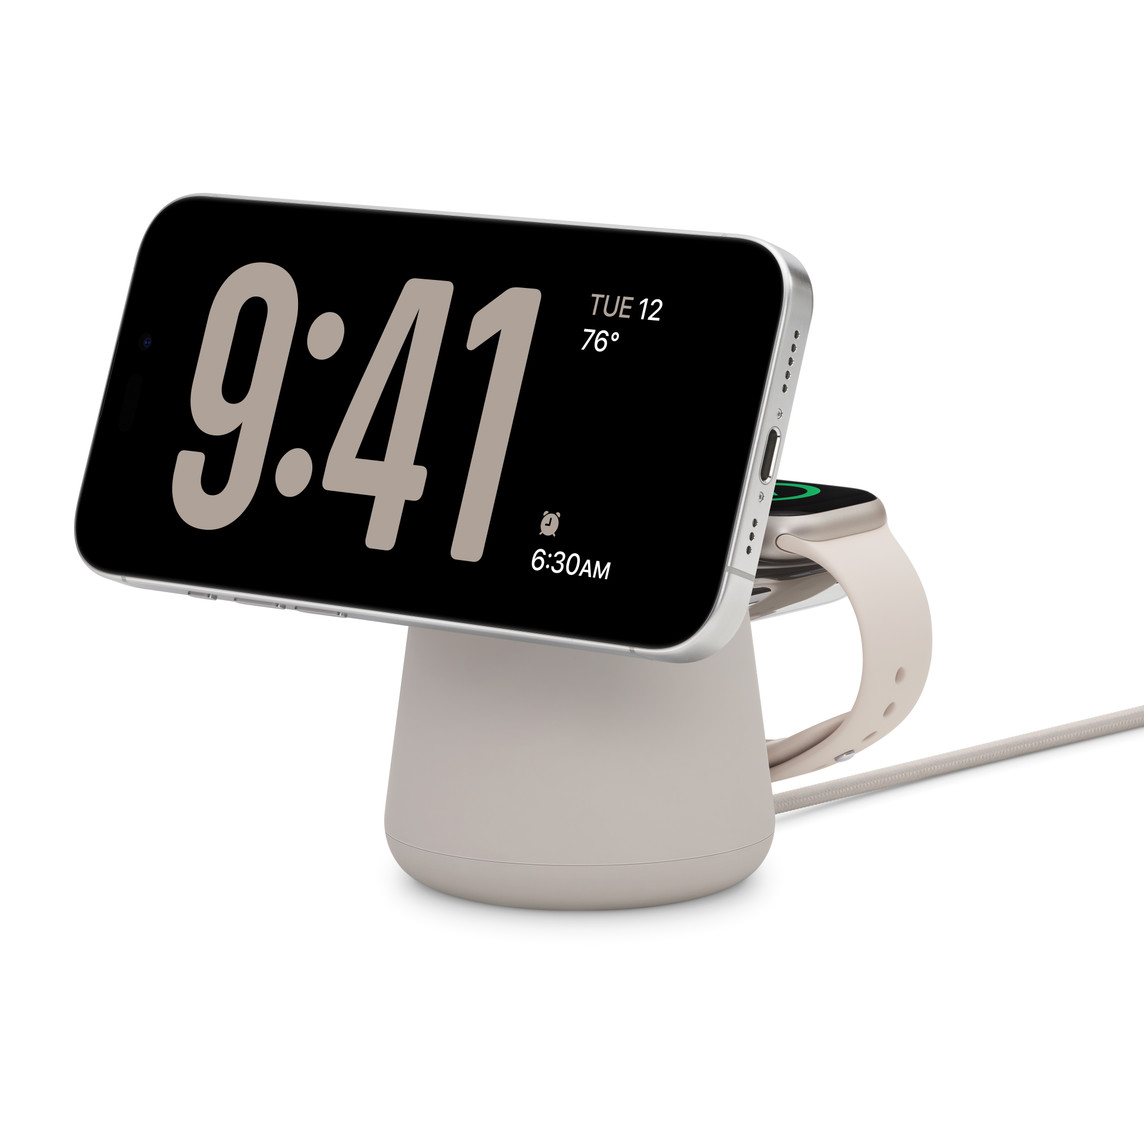 Belkin Boost Charge Pro 2-in-1 Wireless Ladedock mit MagSafe in der Farbe Sand, das gleichzeitig ein iPhone 15 Pro in der Farbe Titan Weiß und eine Apple Watch Series 9 mit 41 mm Gehäuse in der Farbe Polarstern lädt.